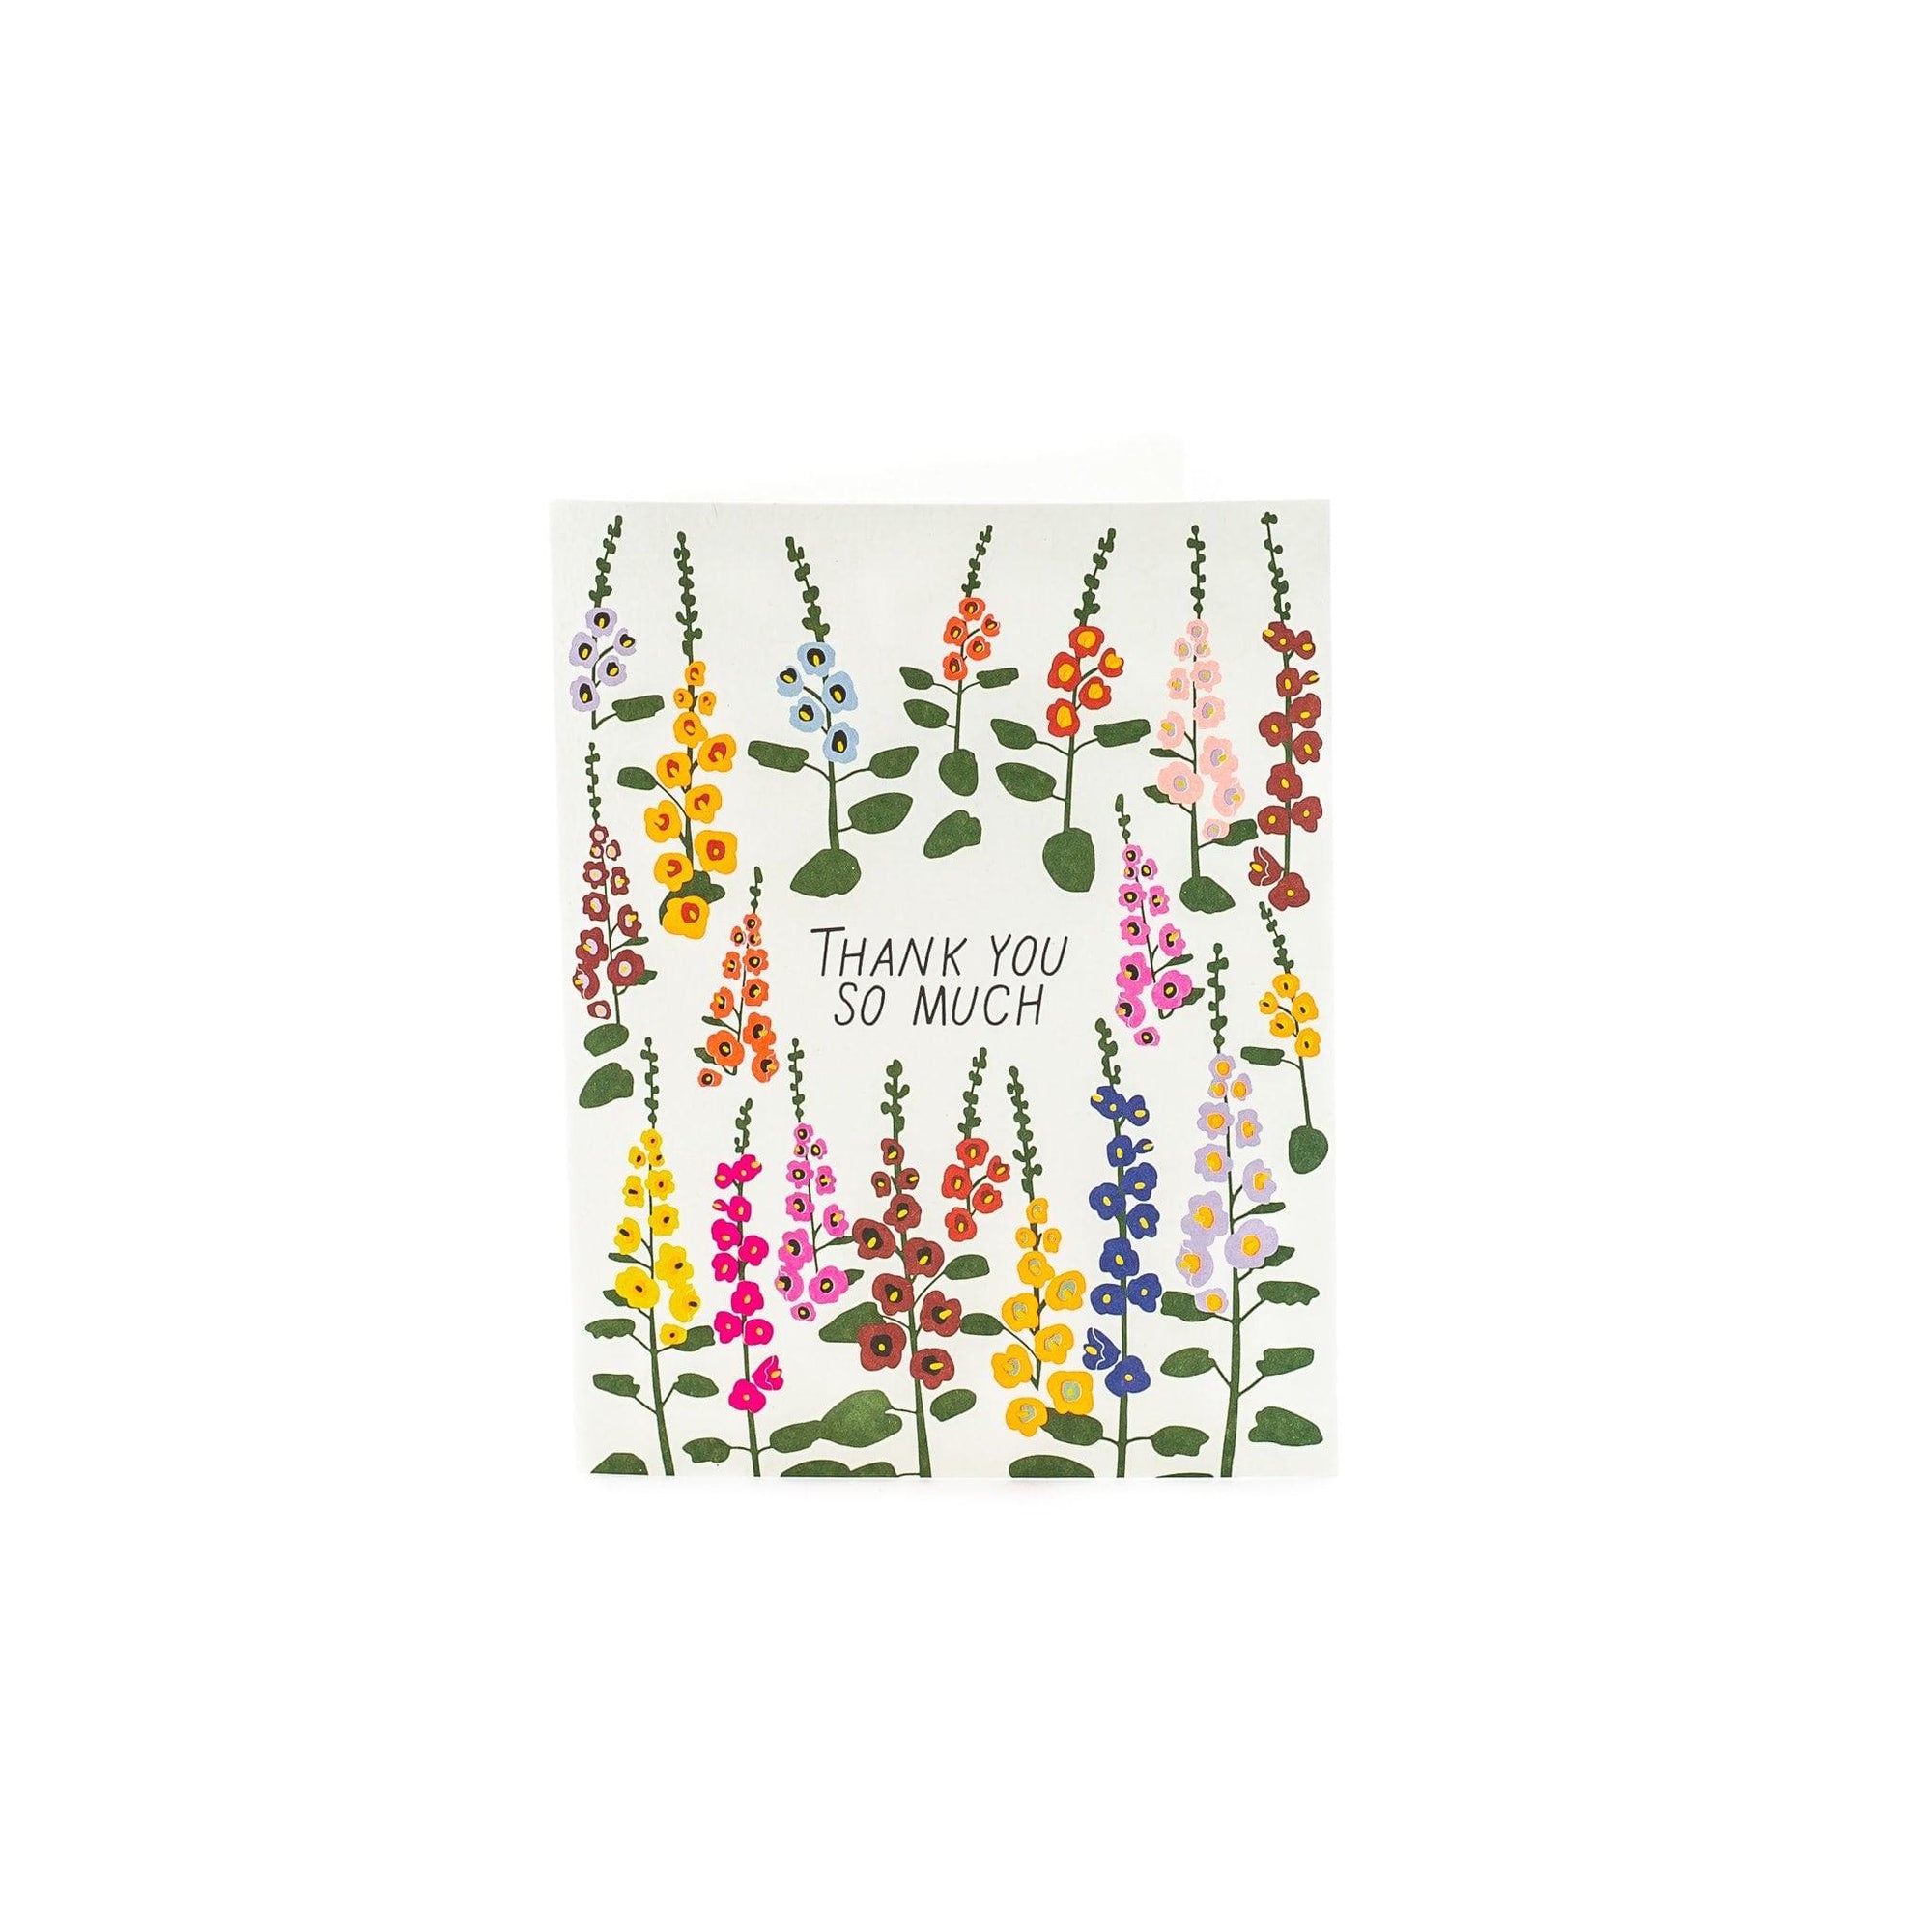 Thank You So Much Hollyhocks Card - Green Fresh Florals + Plants